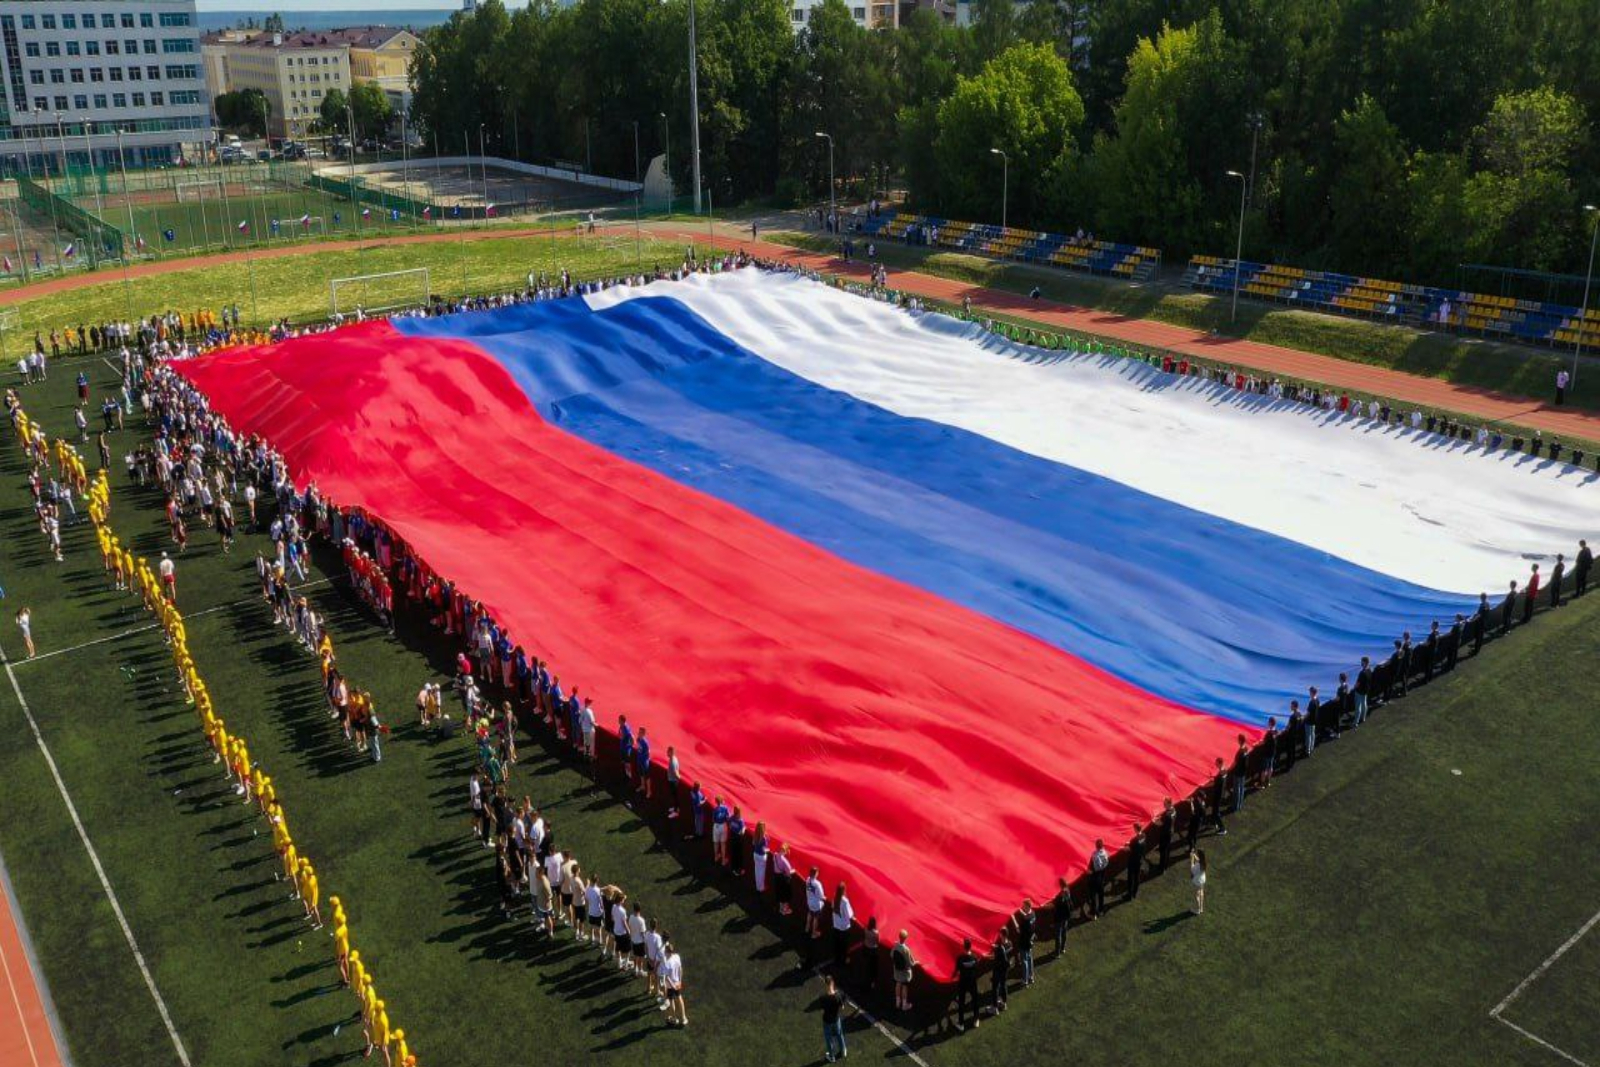 Олег Николаев вместе с молодежью развернул в честь Дня России флаг страны рекордной площадью 3750 кв. метров